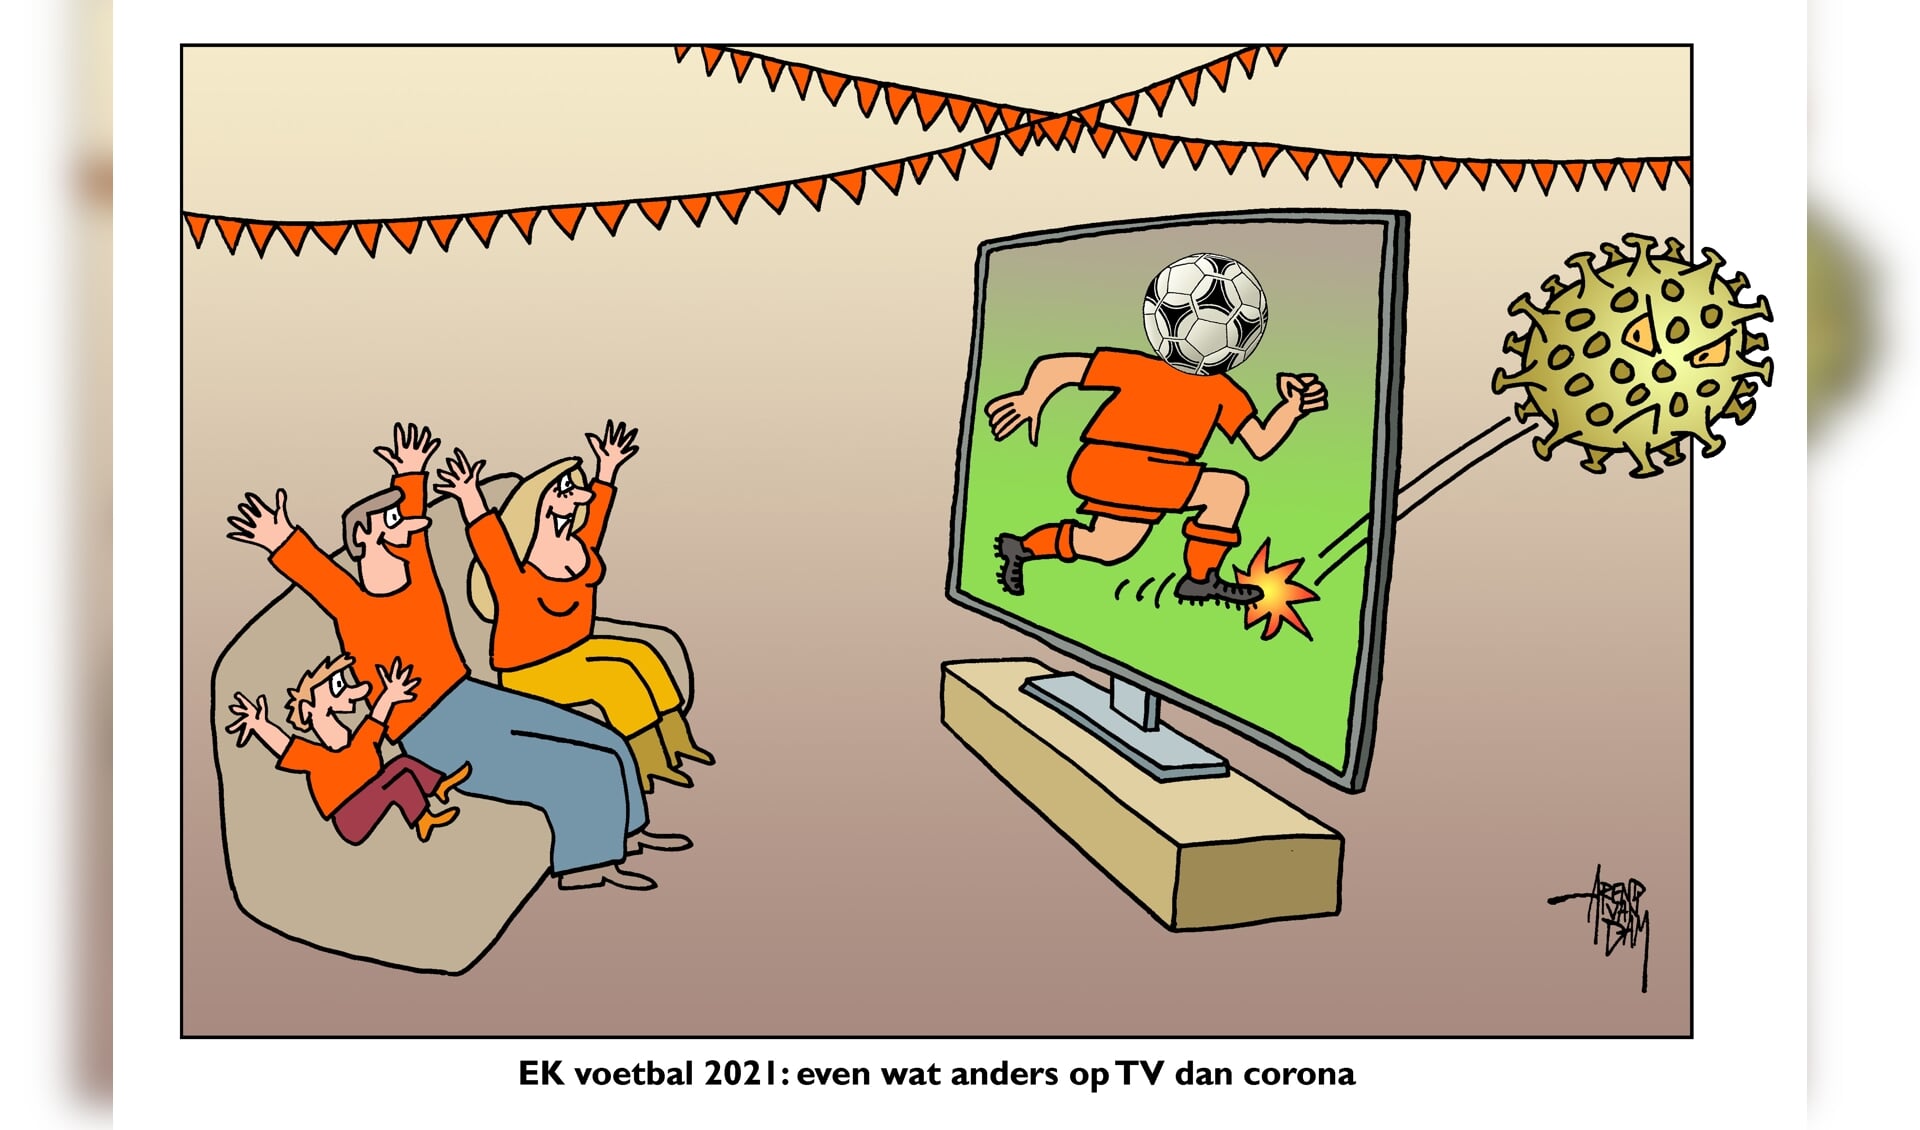 EK voetbal 2021. Even wat anders op tv dan corona.